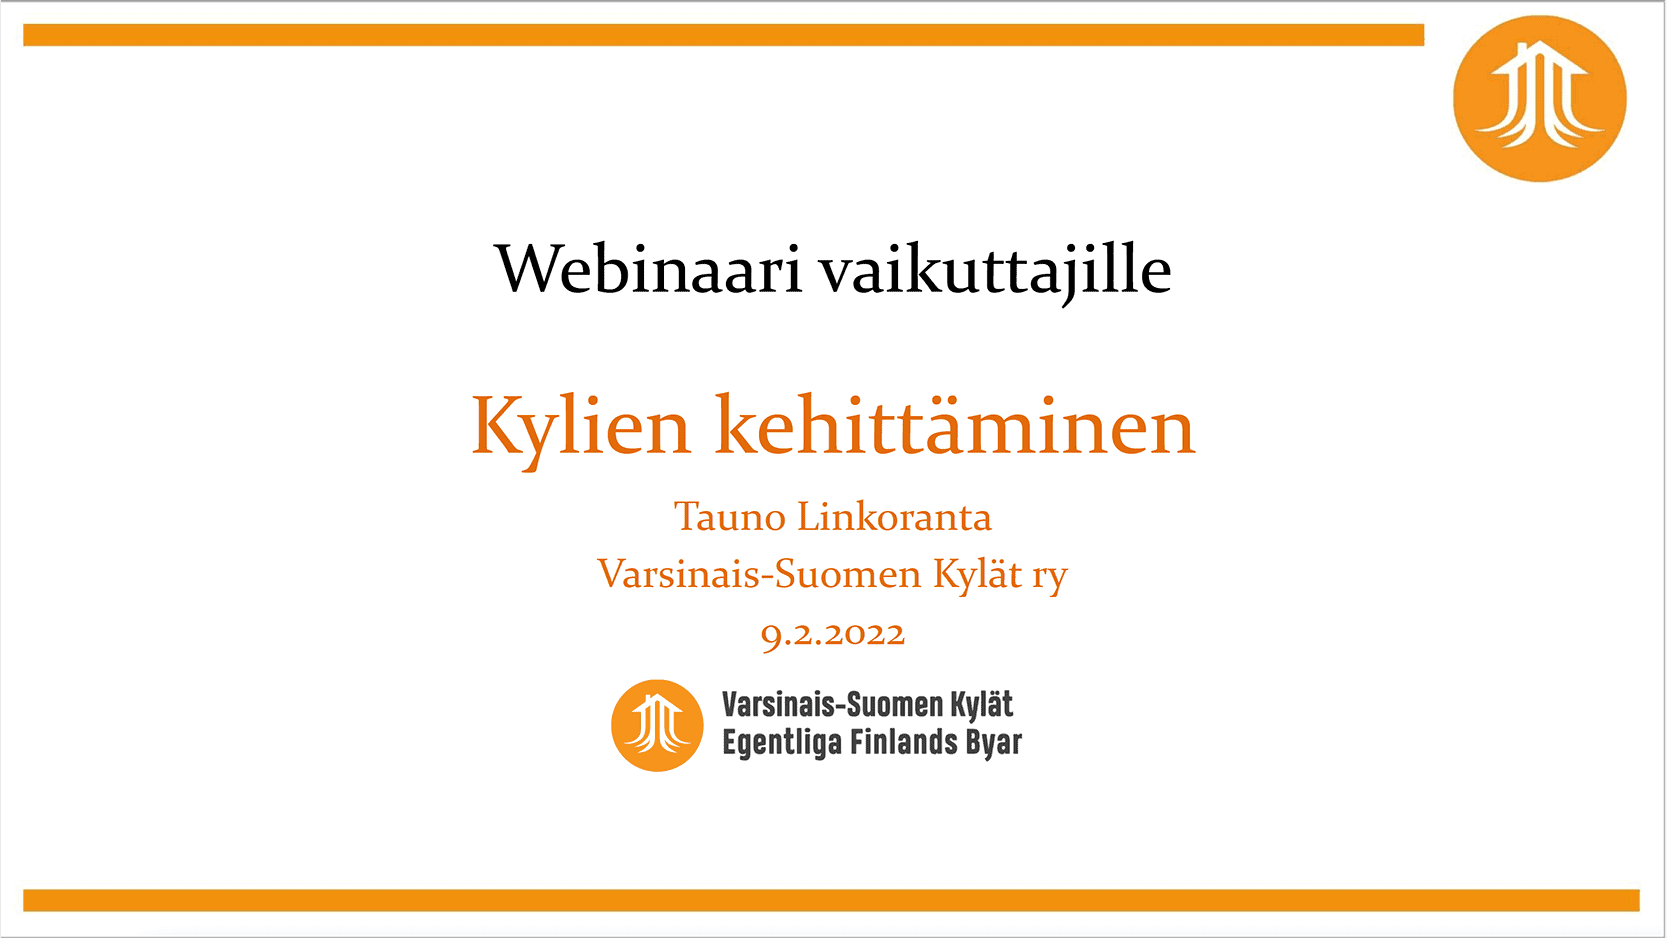 Valkoisella pohjalla Varsinais-Suomen Kylät ry:n oranssi logo ja teksti: Kylien kehittäminen, Tauno Linkoranta.